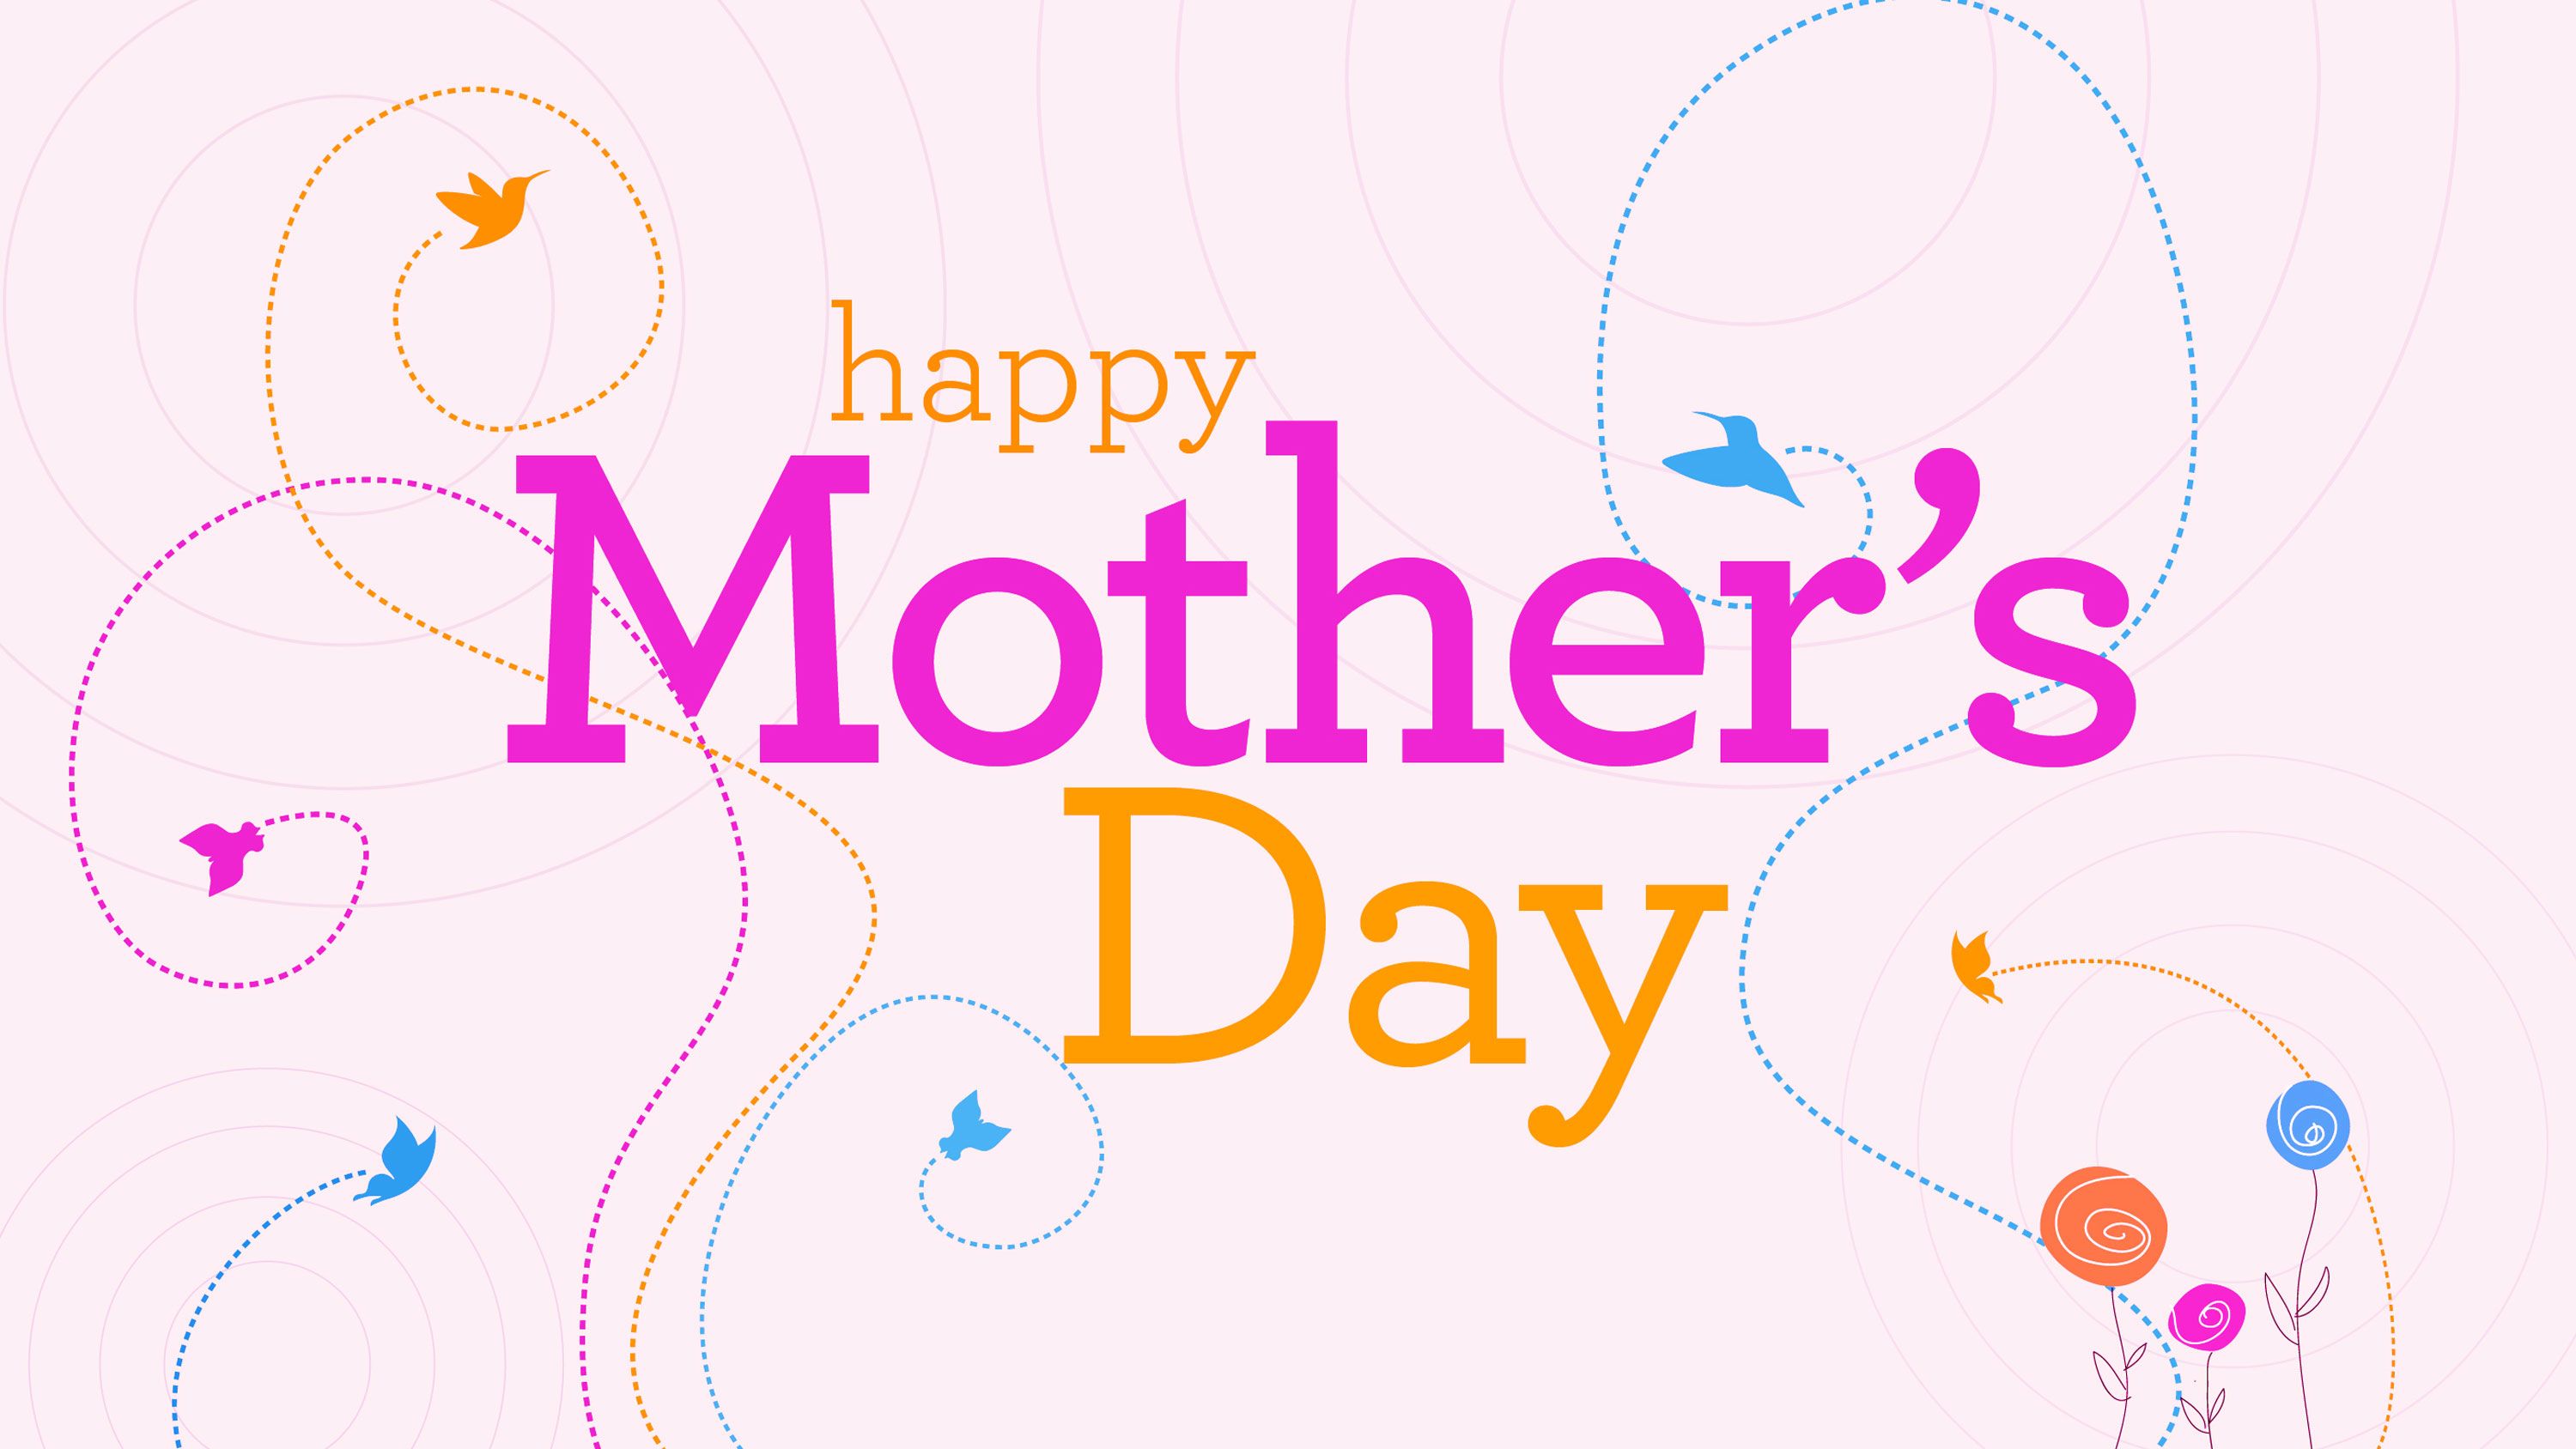 Happy Mother's Day Wallpaper #wallpaper. Mensaje del día